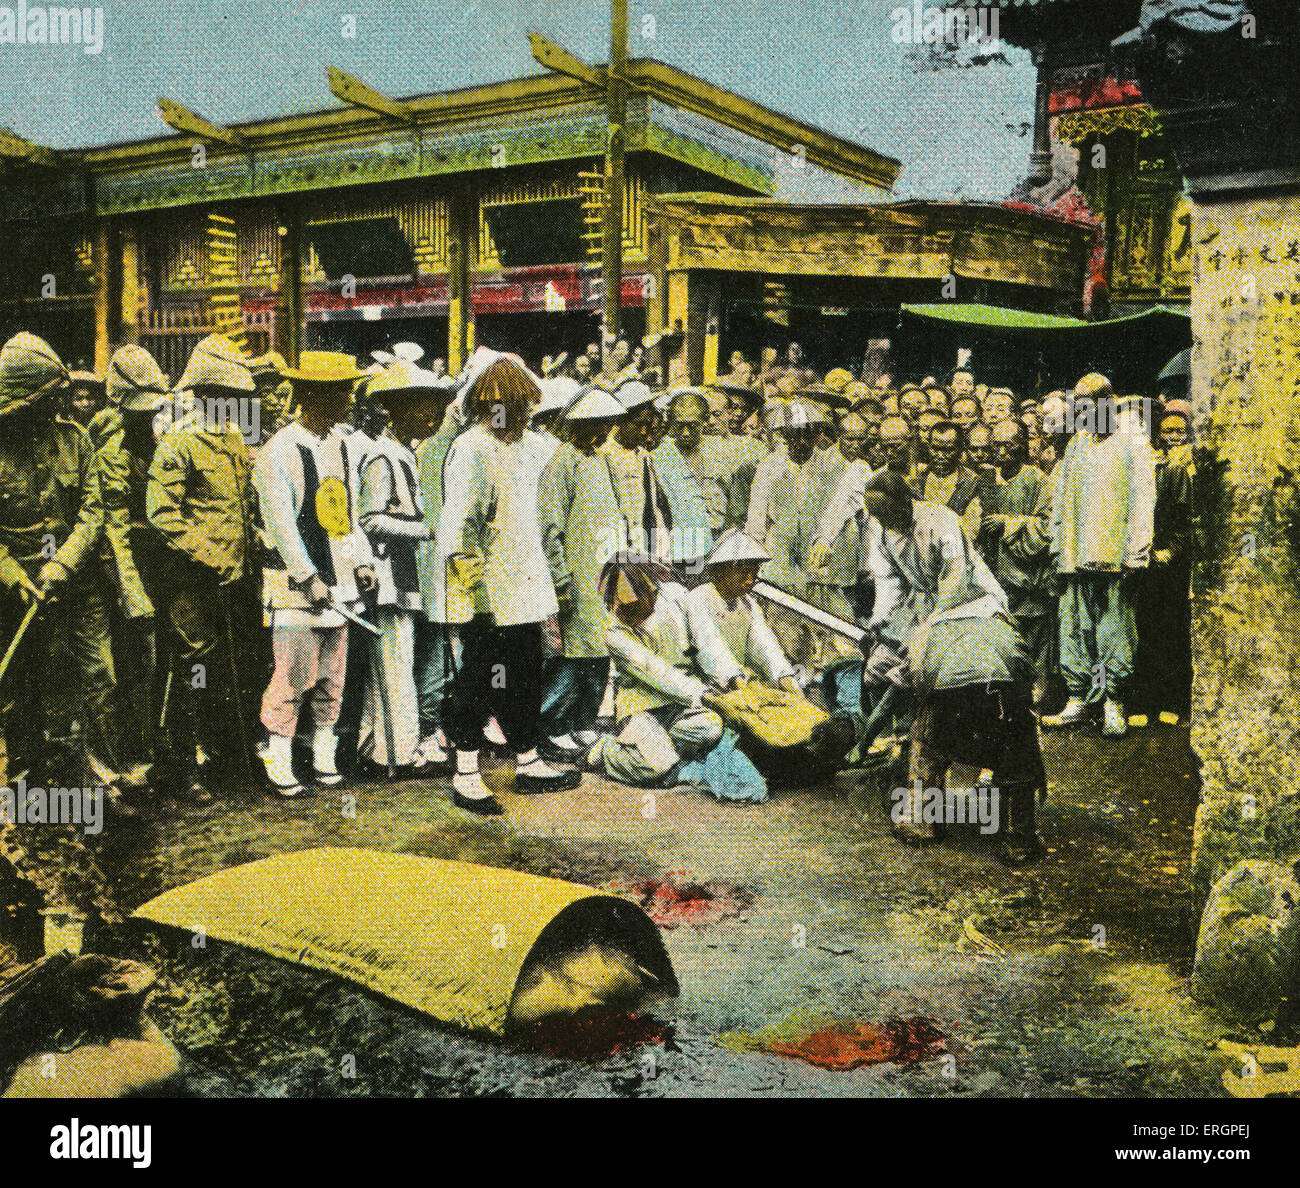 Ejecución pública, una multitud observa una decapitación por espada. China, a principios del siglo XX. Foto de stock